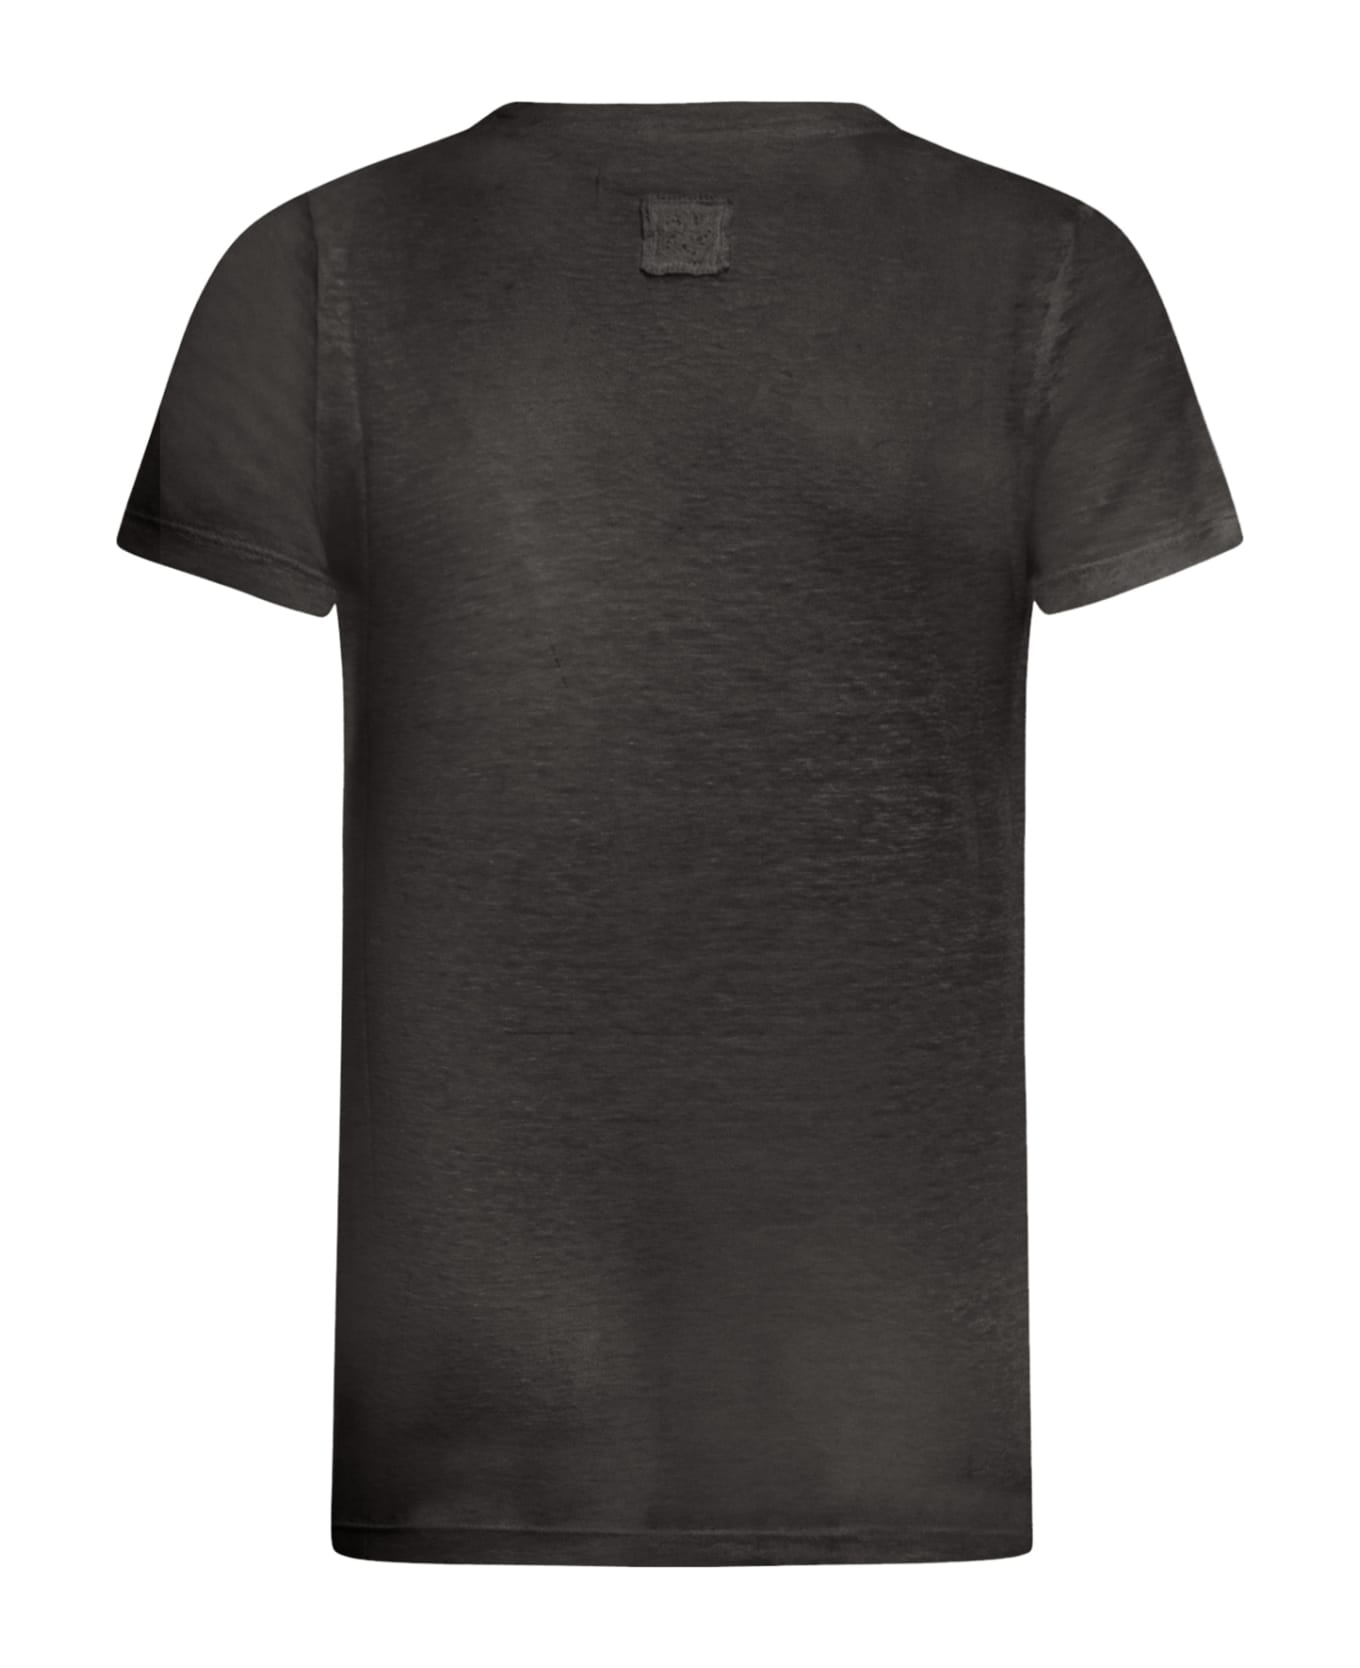 120% Lino Short Sleeve Women Tshirt - R Black Tシャツ